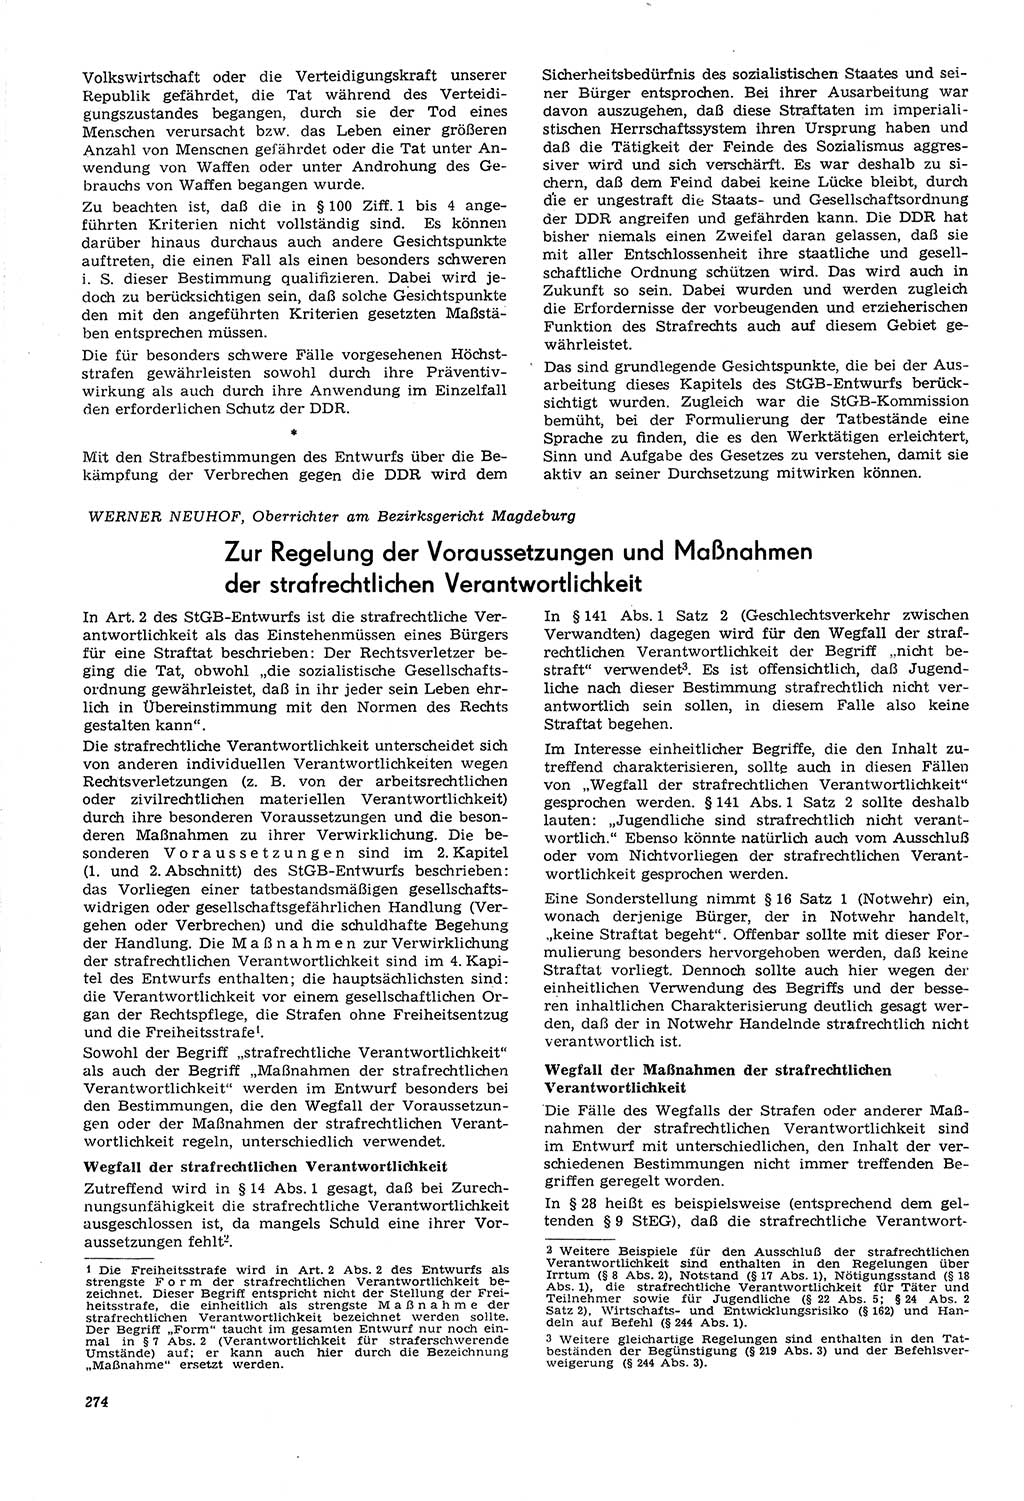 Neue Justiz (NJ), Zeitschrift für Recht und Rechtswissenschaft [Deutsche Demokratische Republik (DDR)], 21. Jahrgang 1967, Seite 274 (NJ DDR 1967, S. 274)